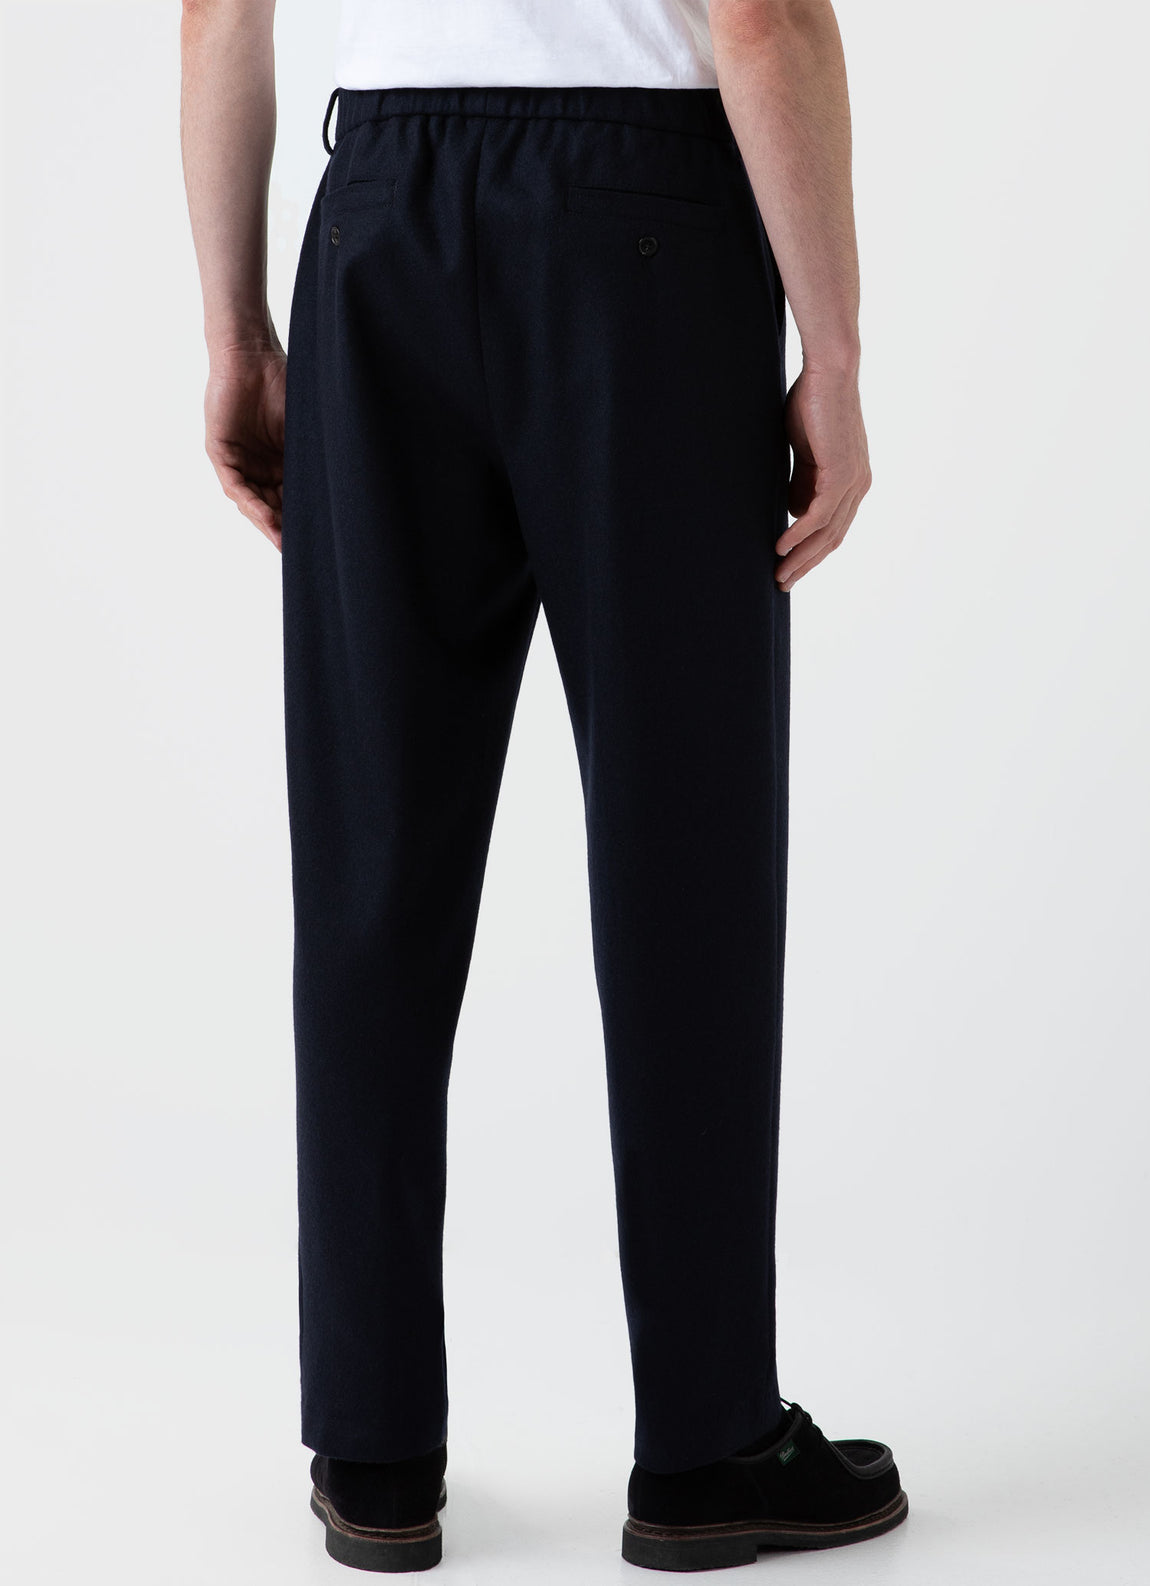 Men's Sunspel x Casely-Hayford Trouser in Navy | Sunspel